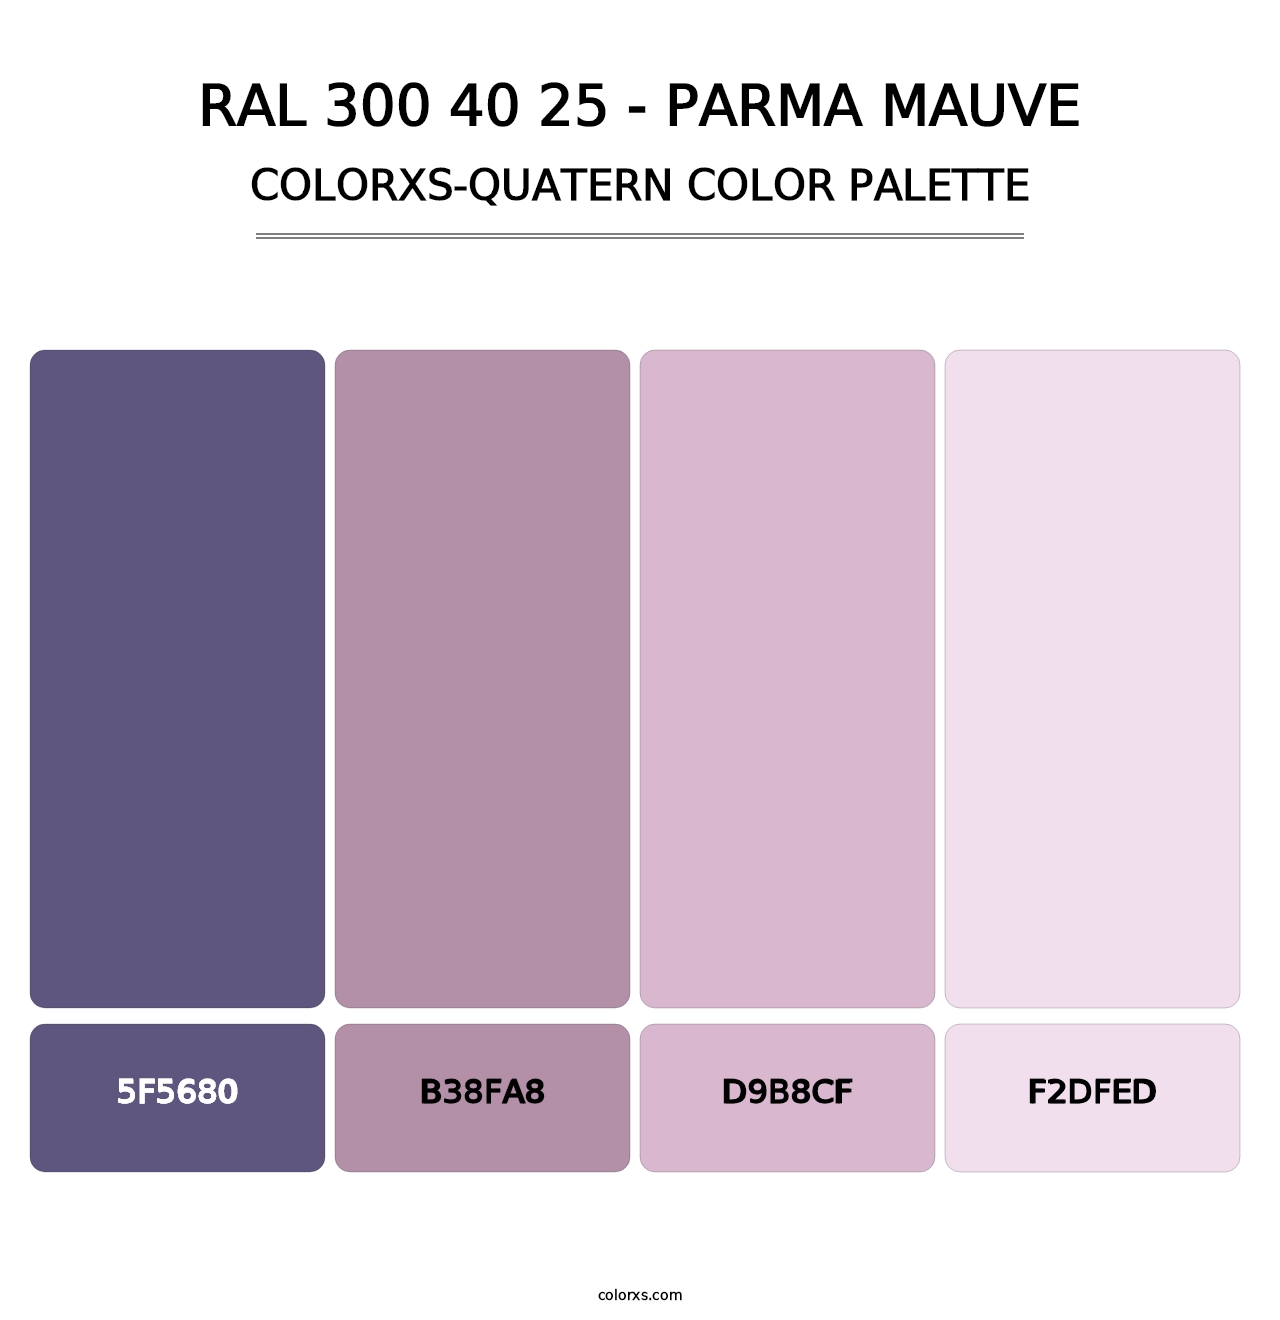 RAL 300 40 25 - Parma Mauve - Colorxs Quatern Palette